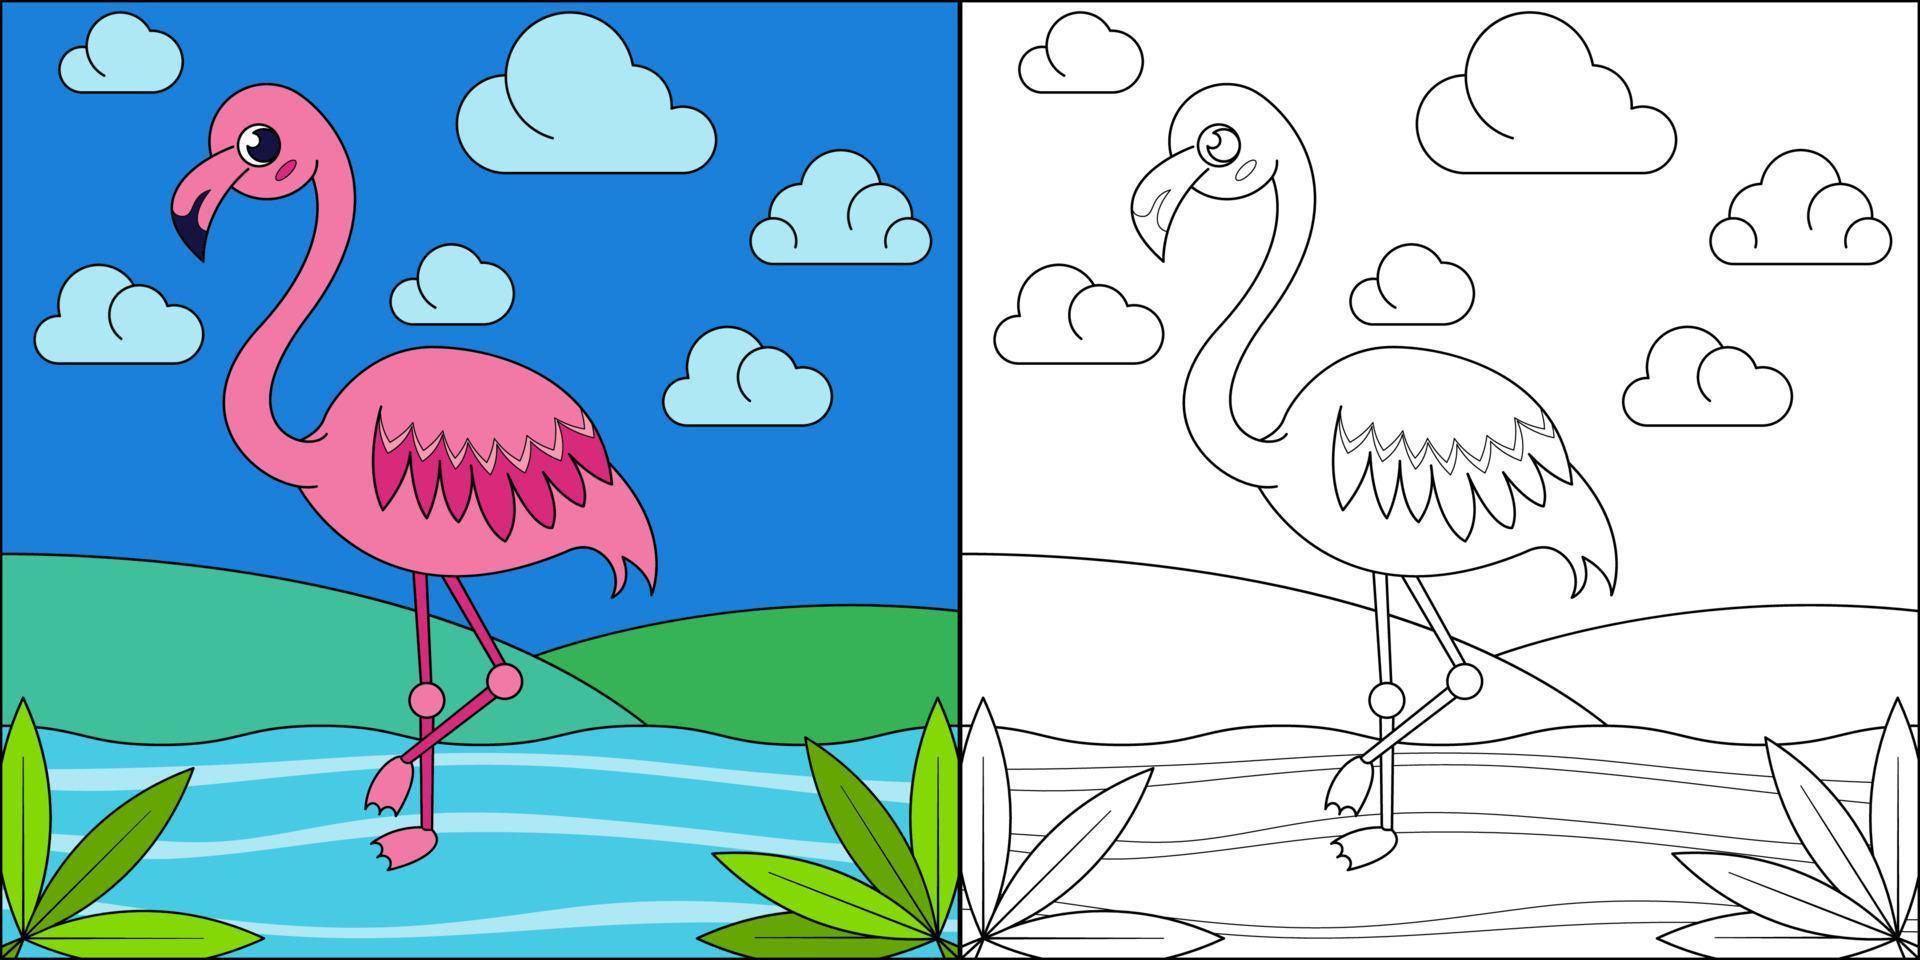 rosa flamingo lämplig för barns målarbok vektorillustration vektor